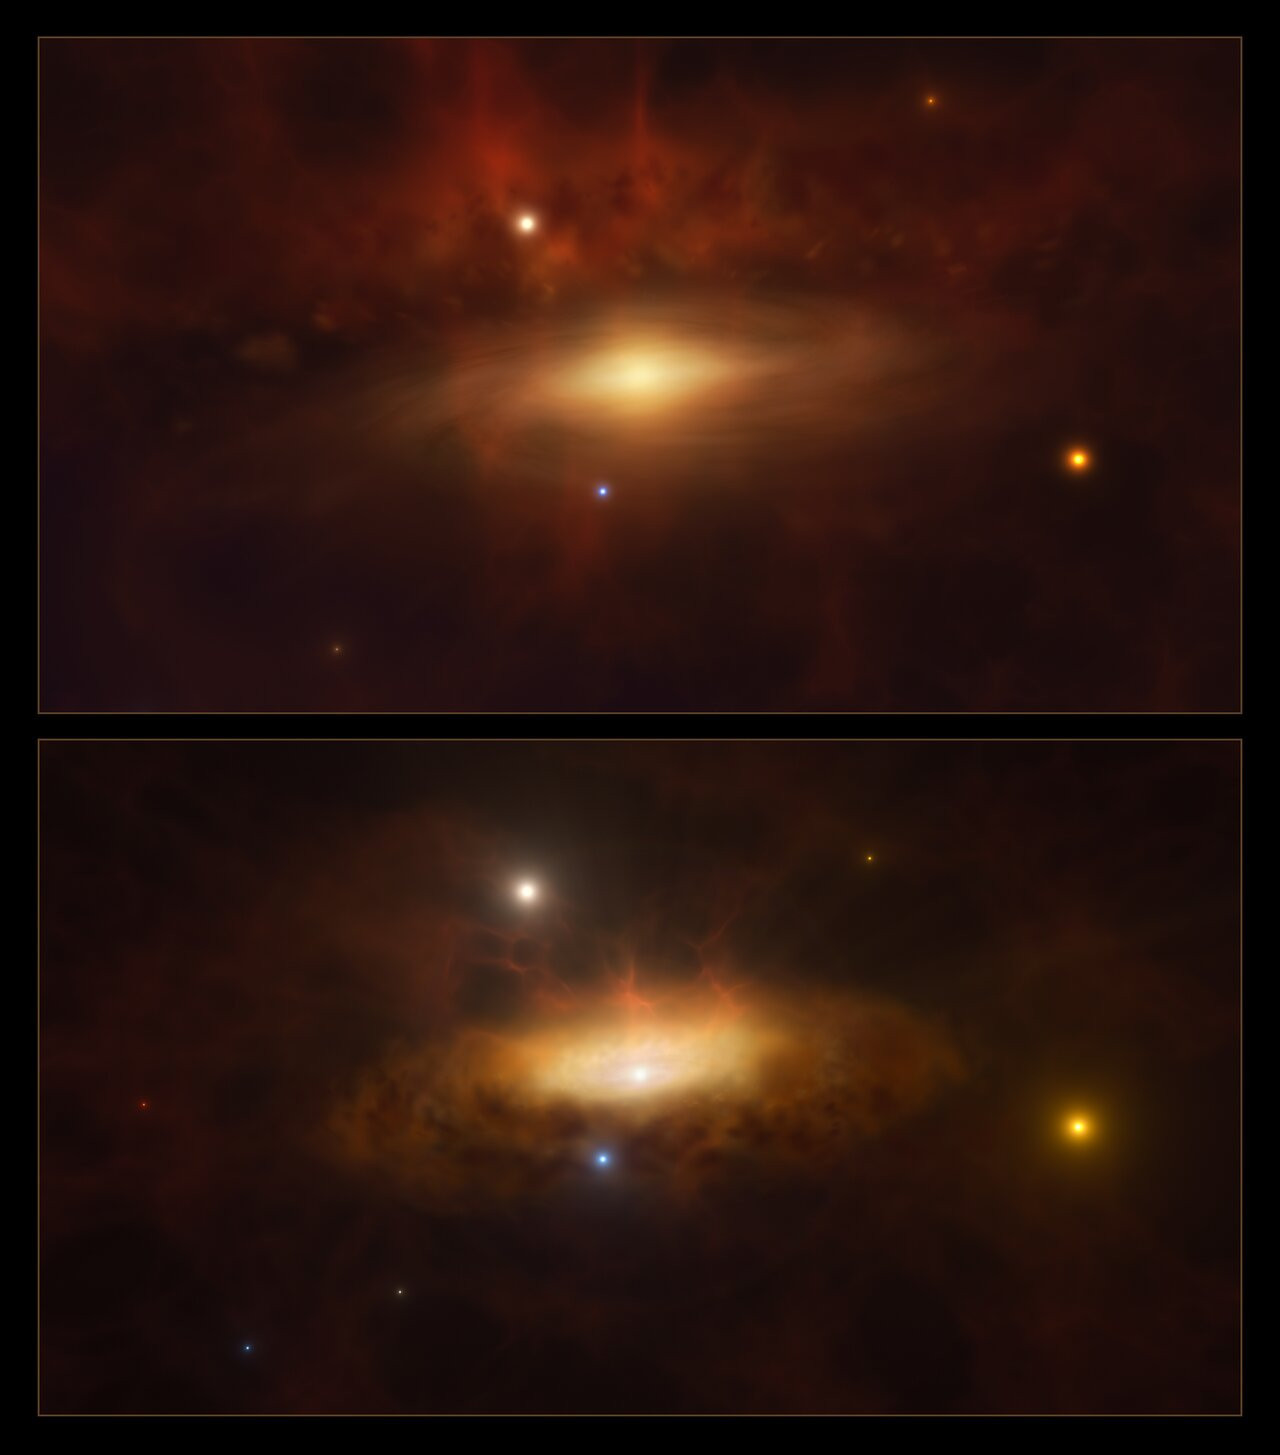 La galaxia SDSS1335+0728 comenzó a brillar cada vez más, y podría deberse al nacimiento de un agujero negro en su núcleo